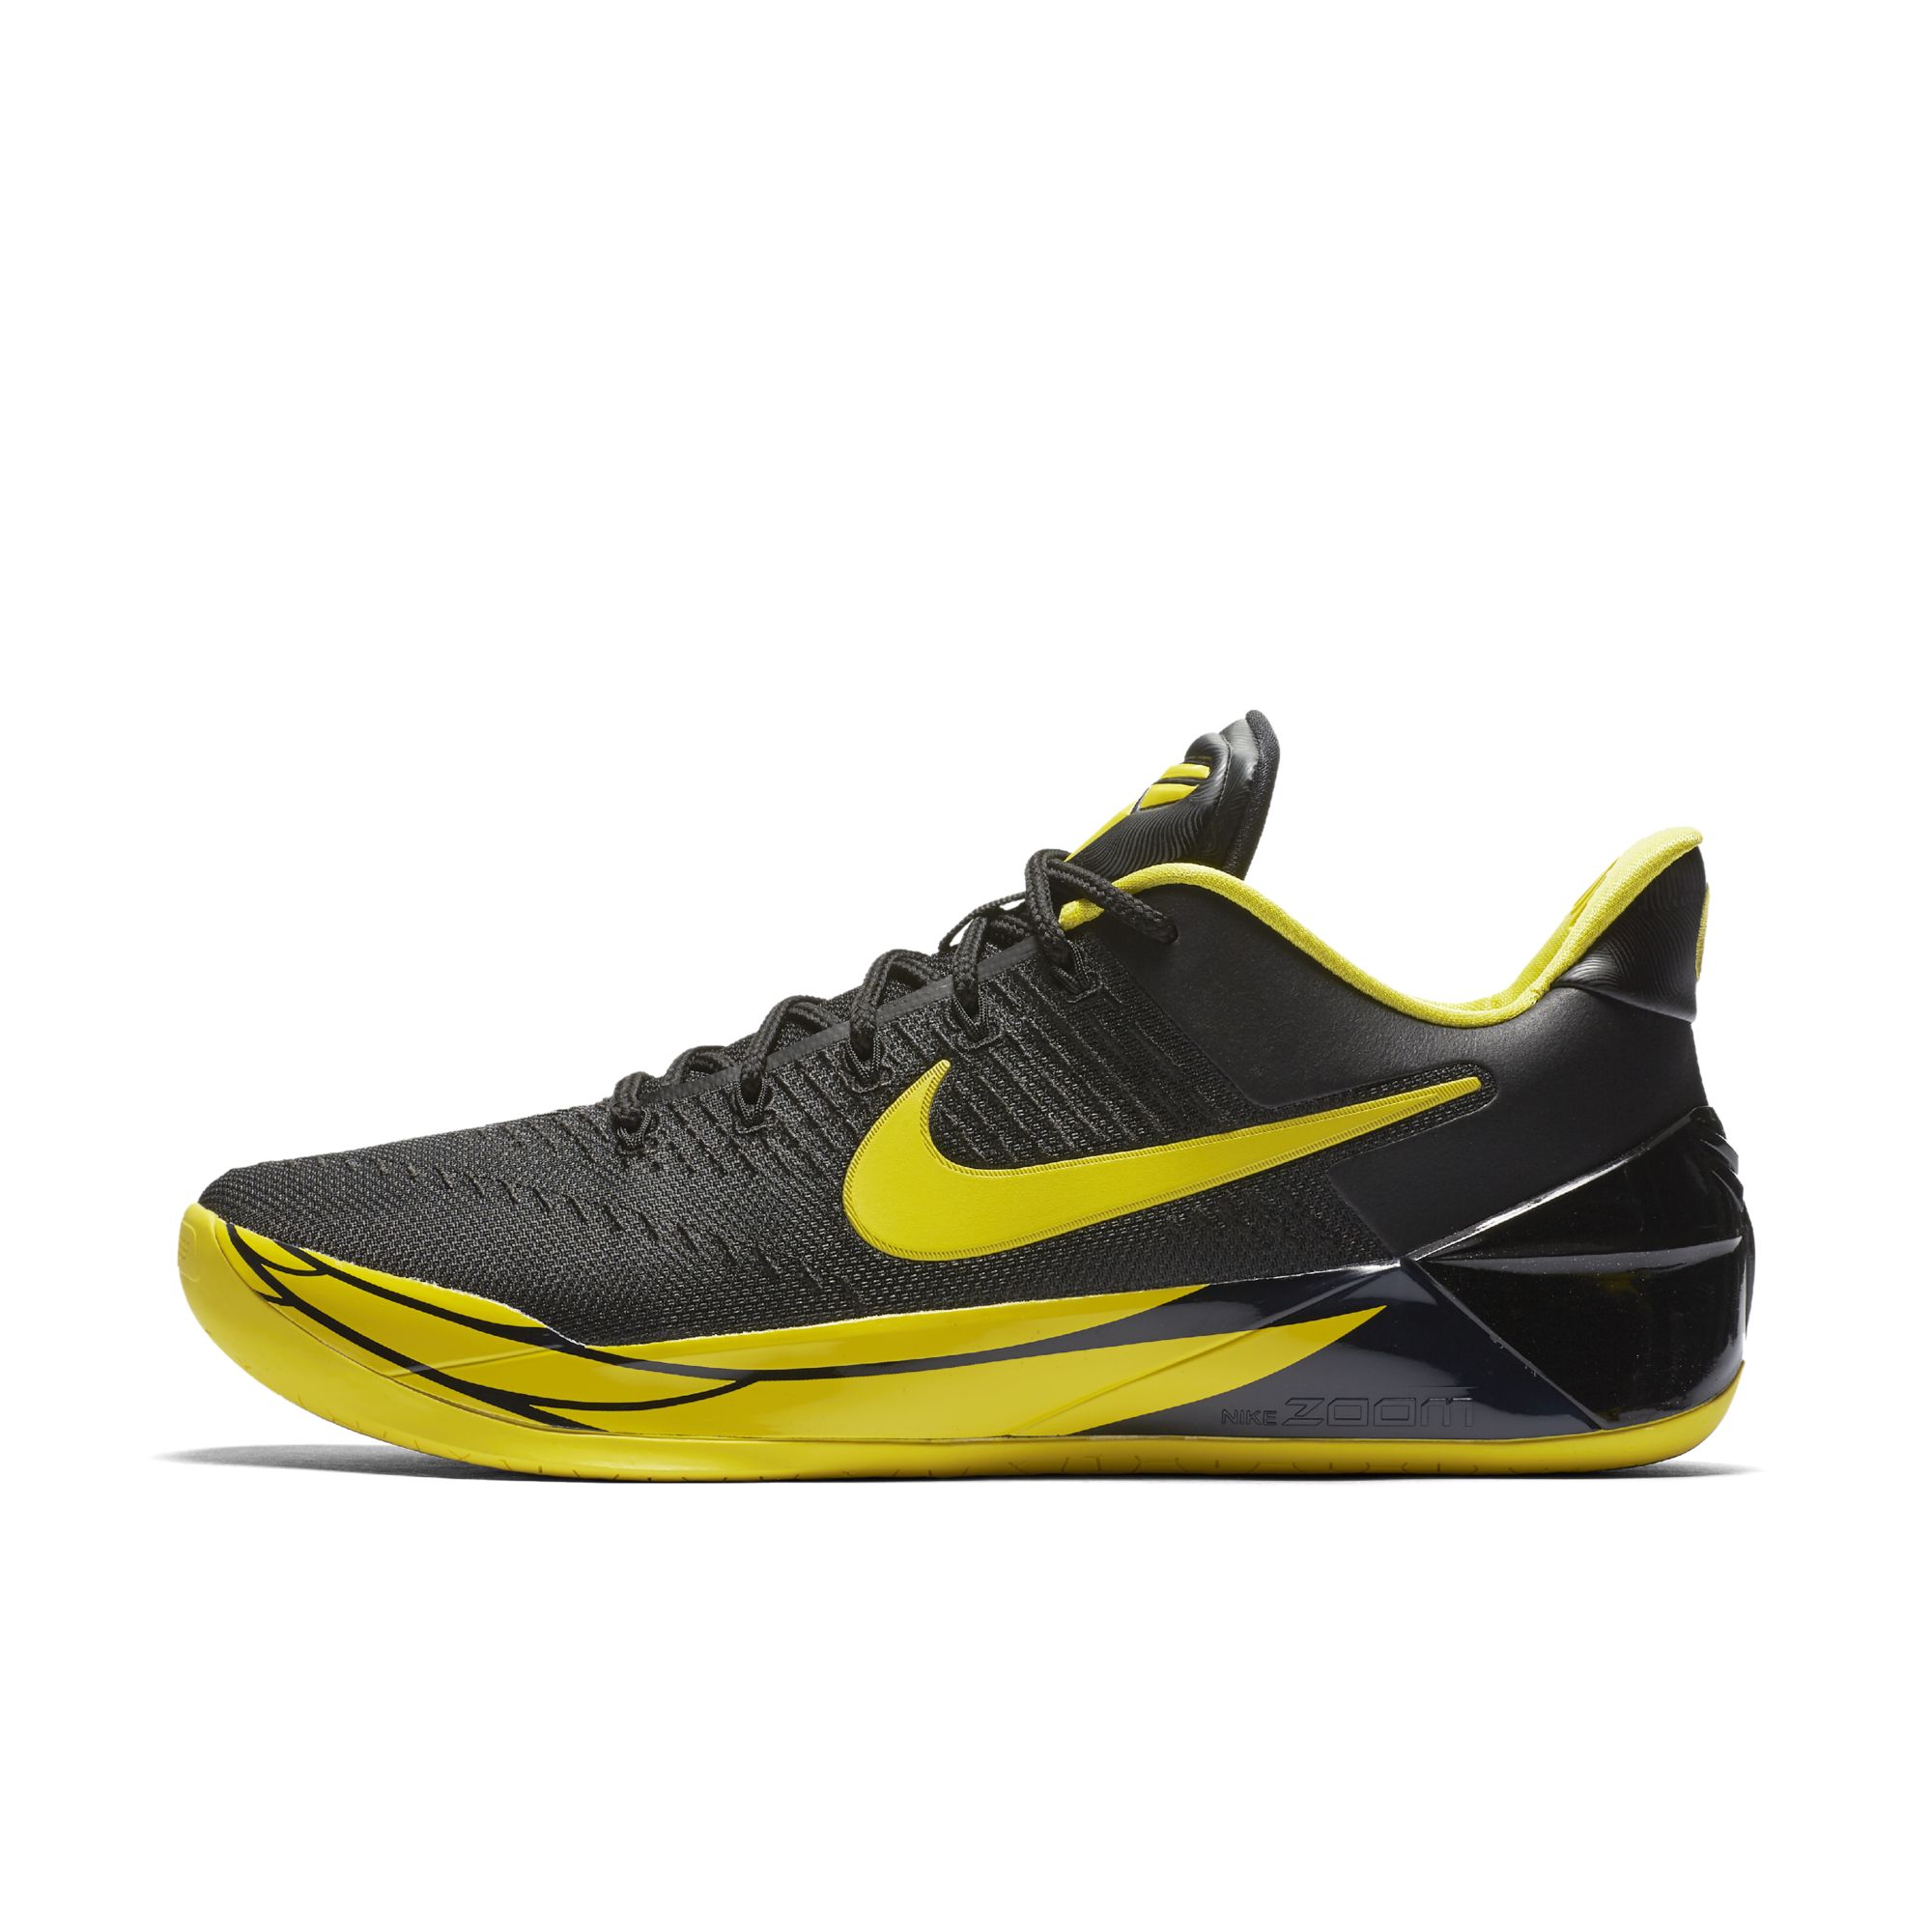 A Nike Kobe A.D. 'Oregon' is Set to 